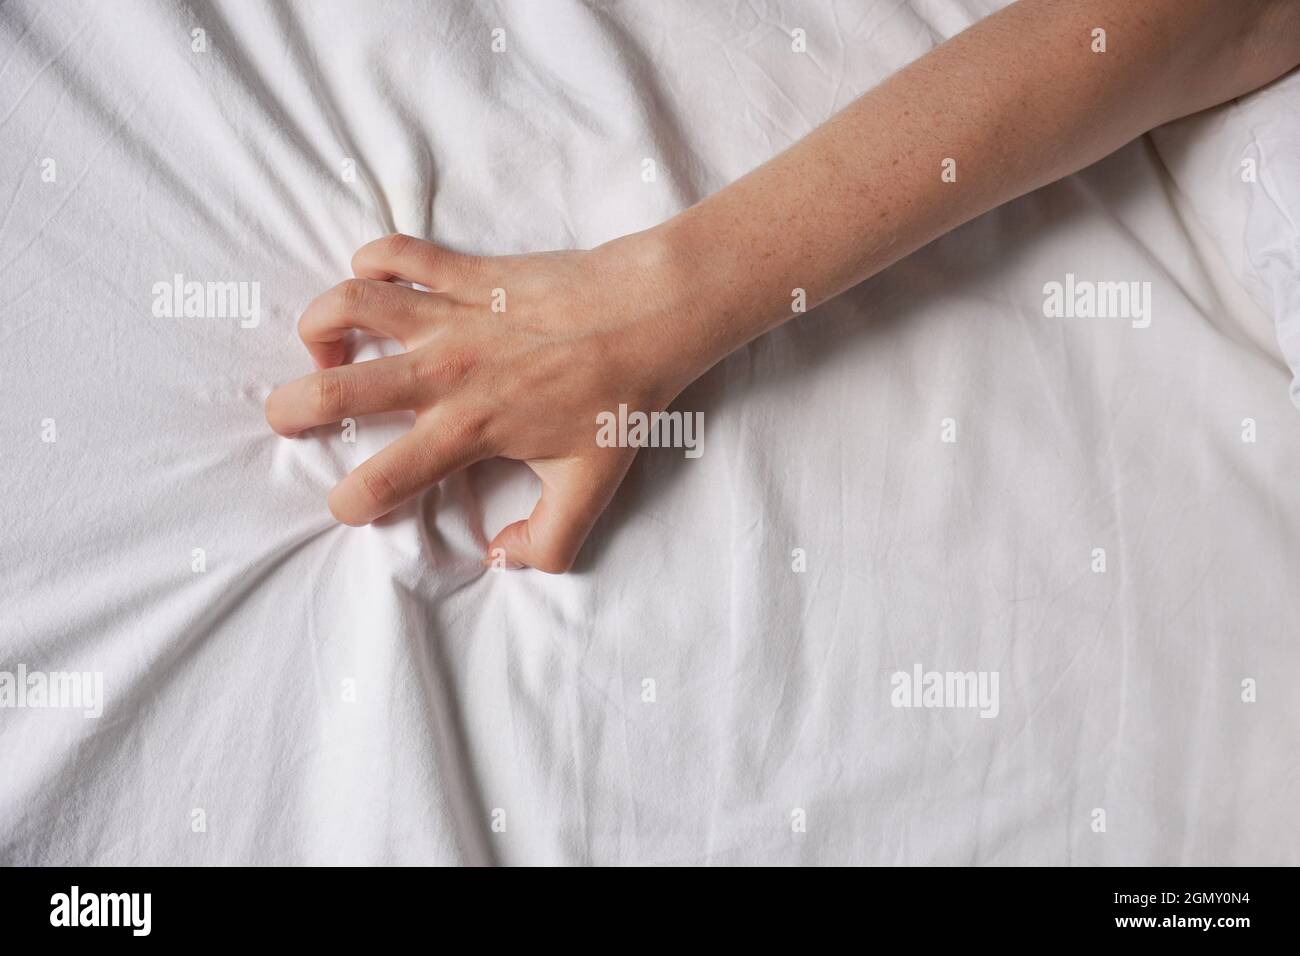 Weibliche Hand greift nach Bettlaken Stockfoto